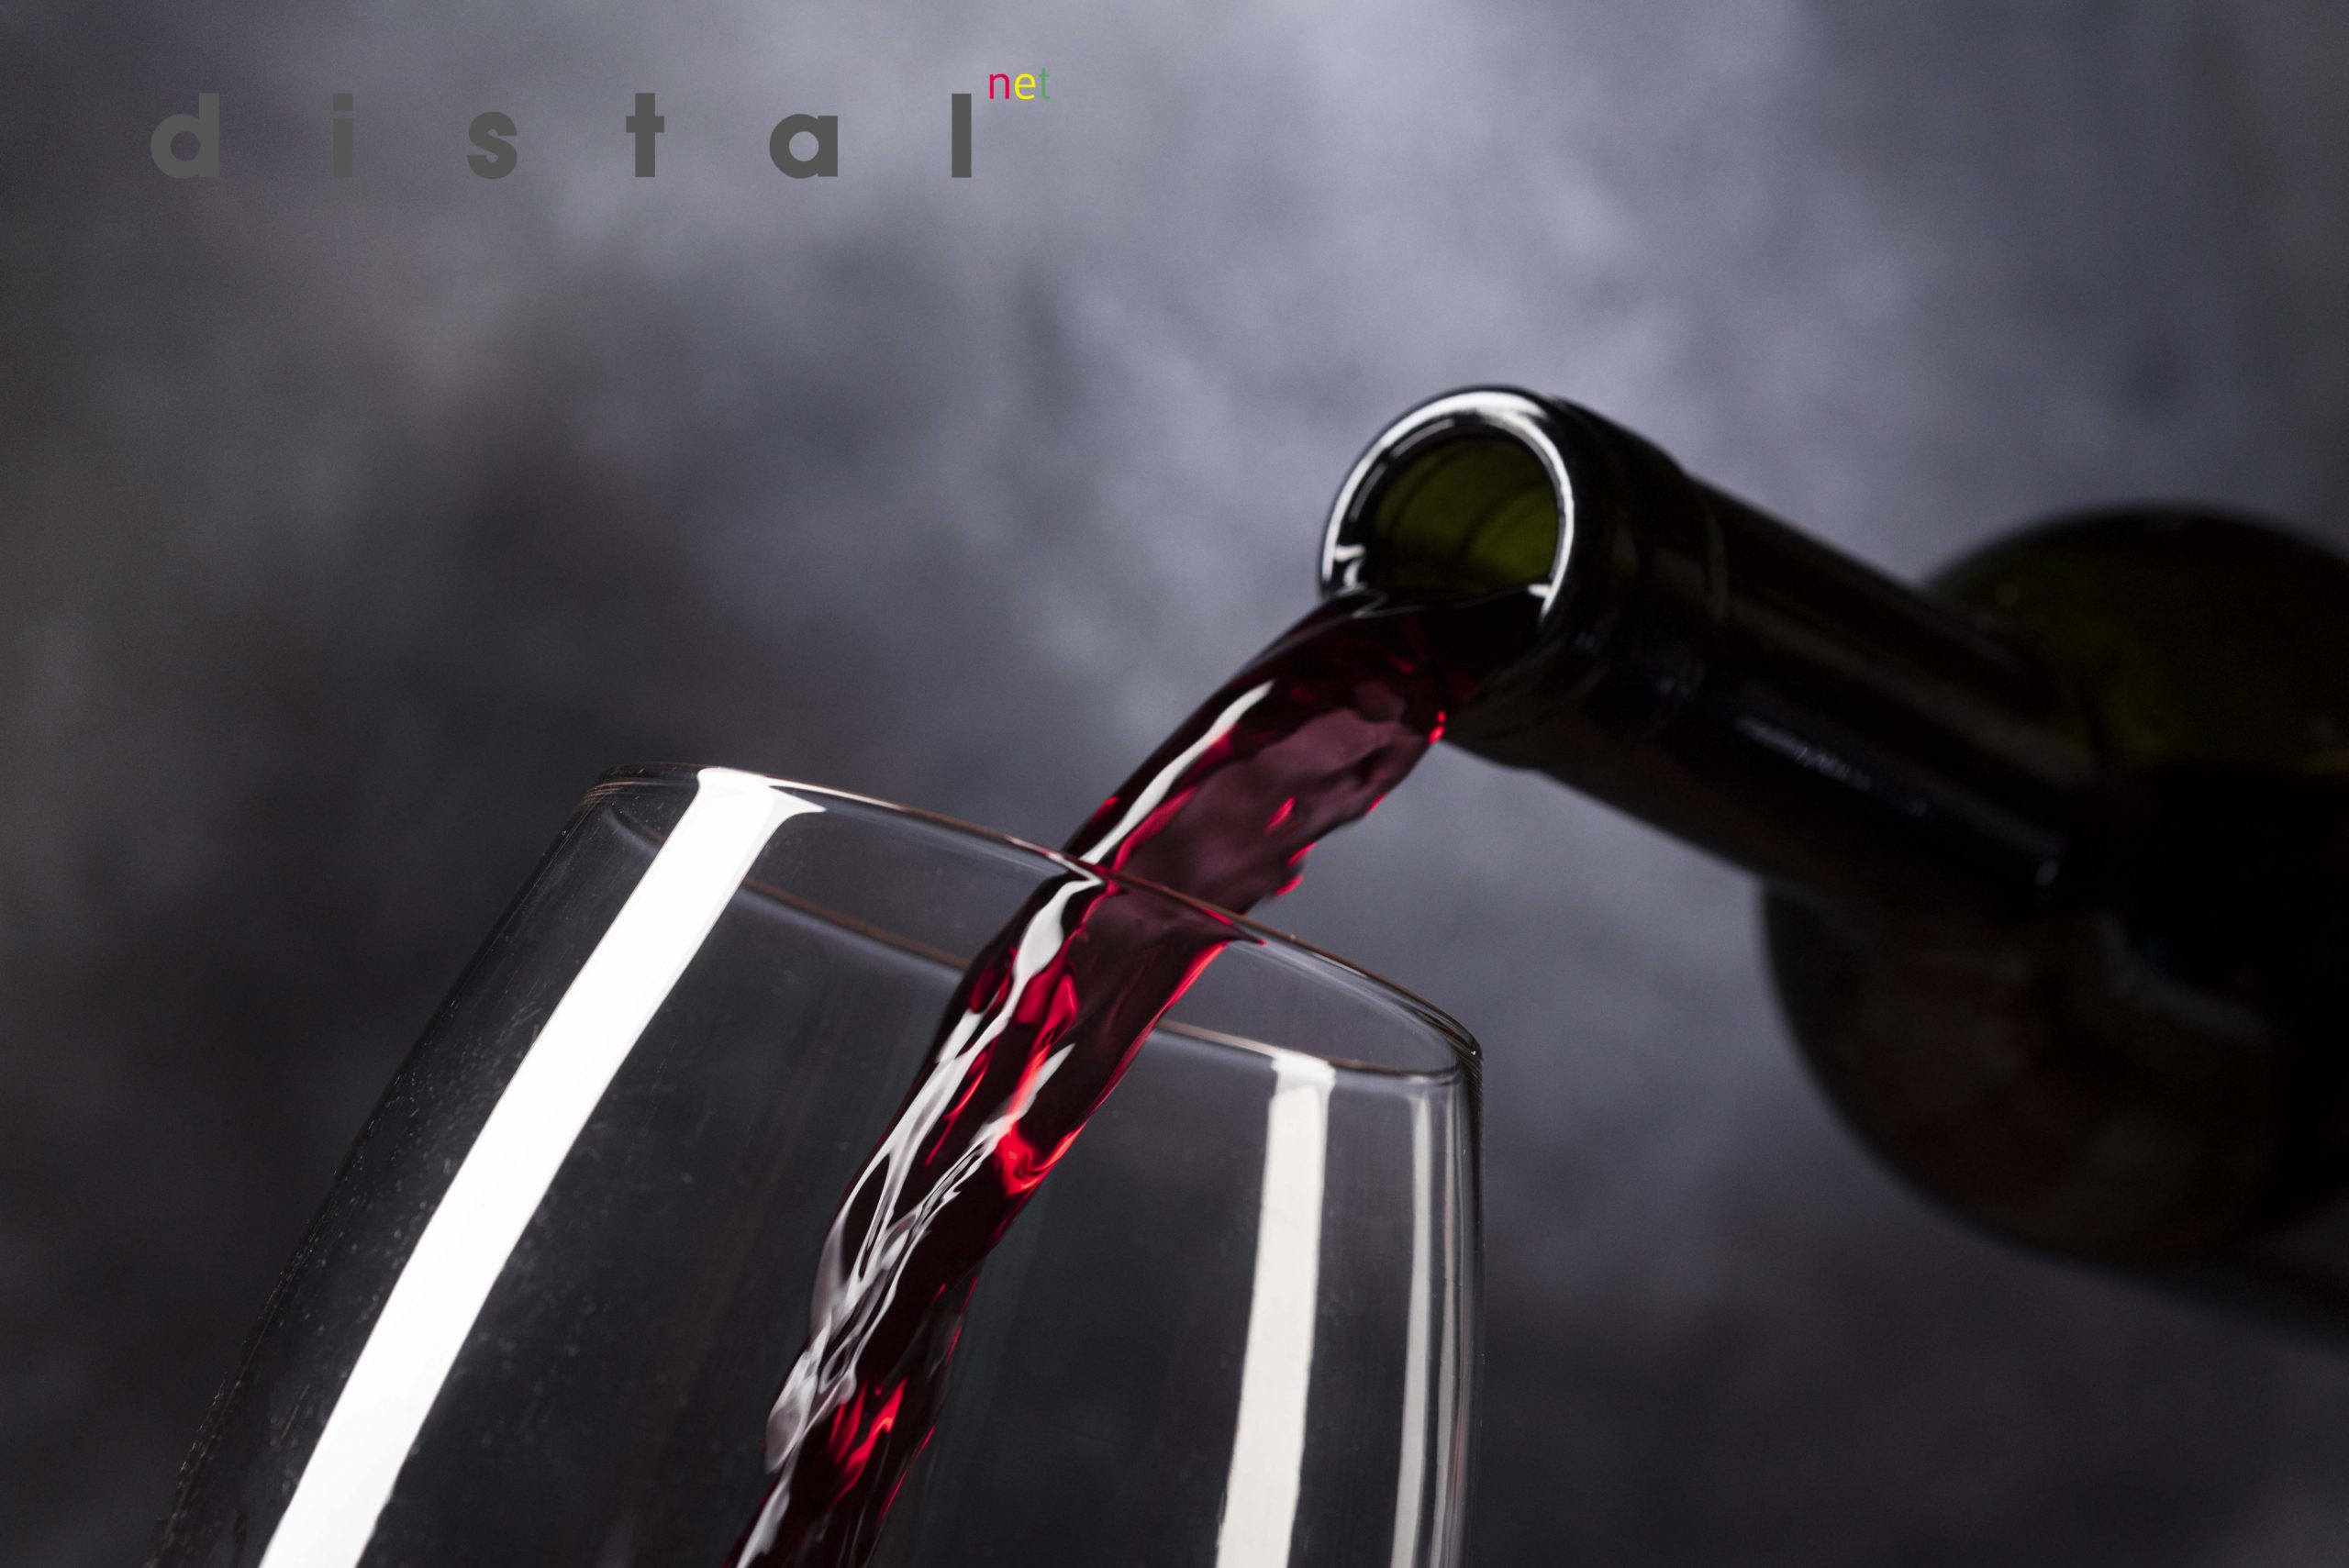 Vinoteca Distalnet los mejores vinos del mundo